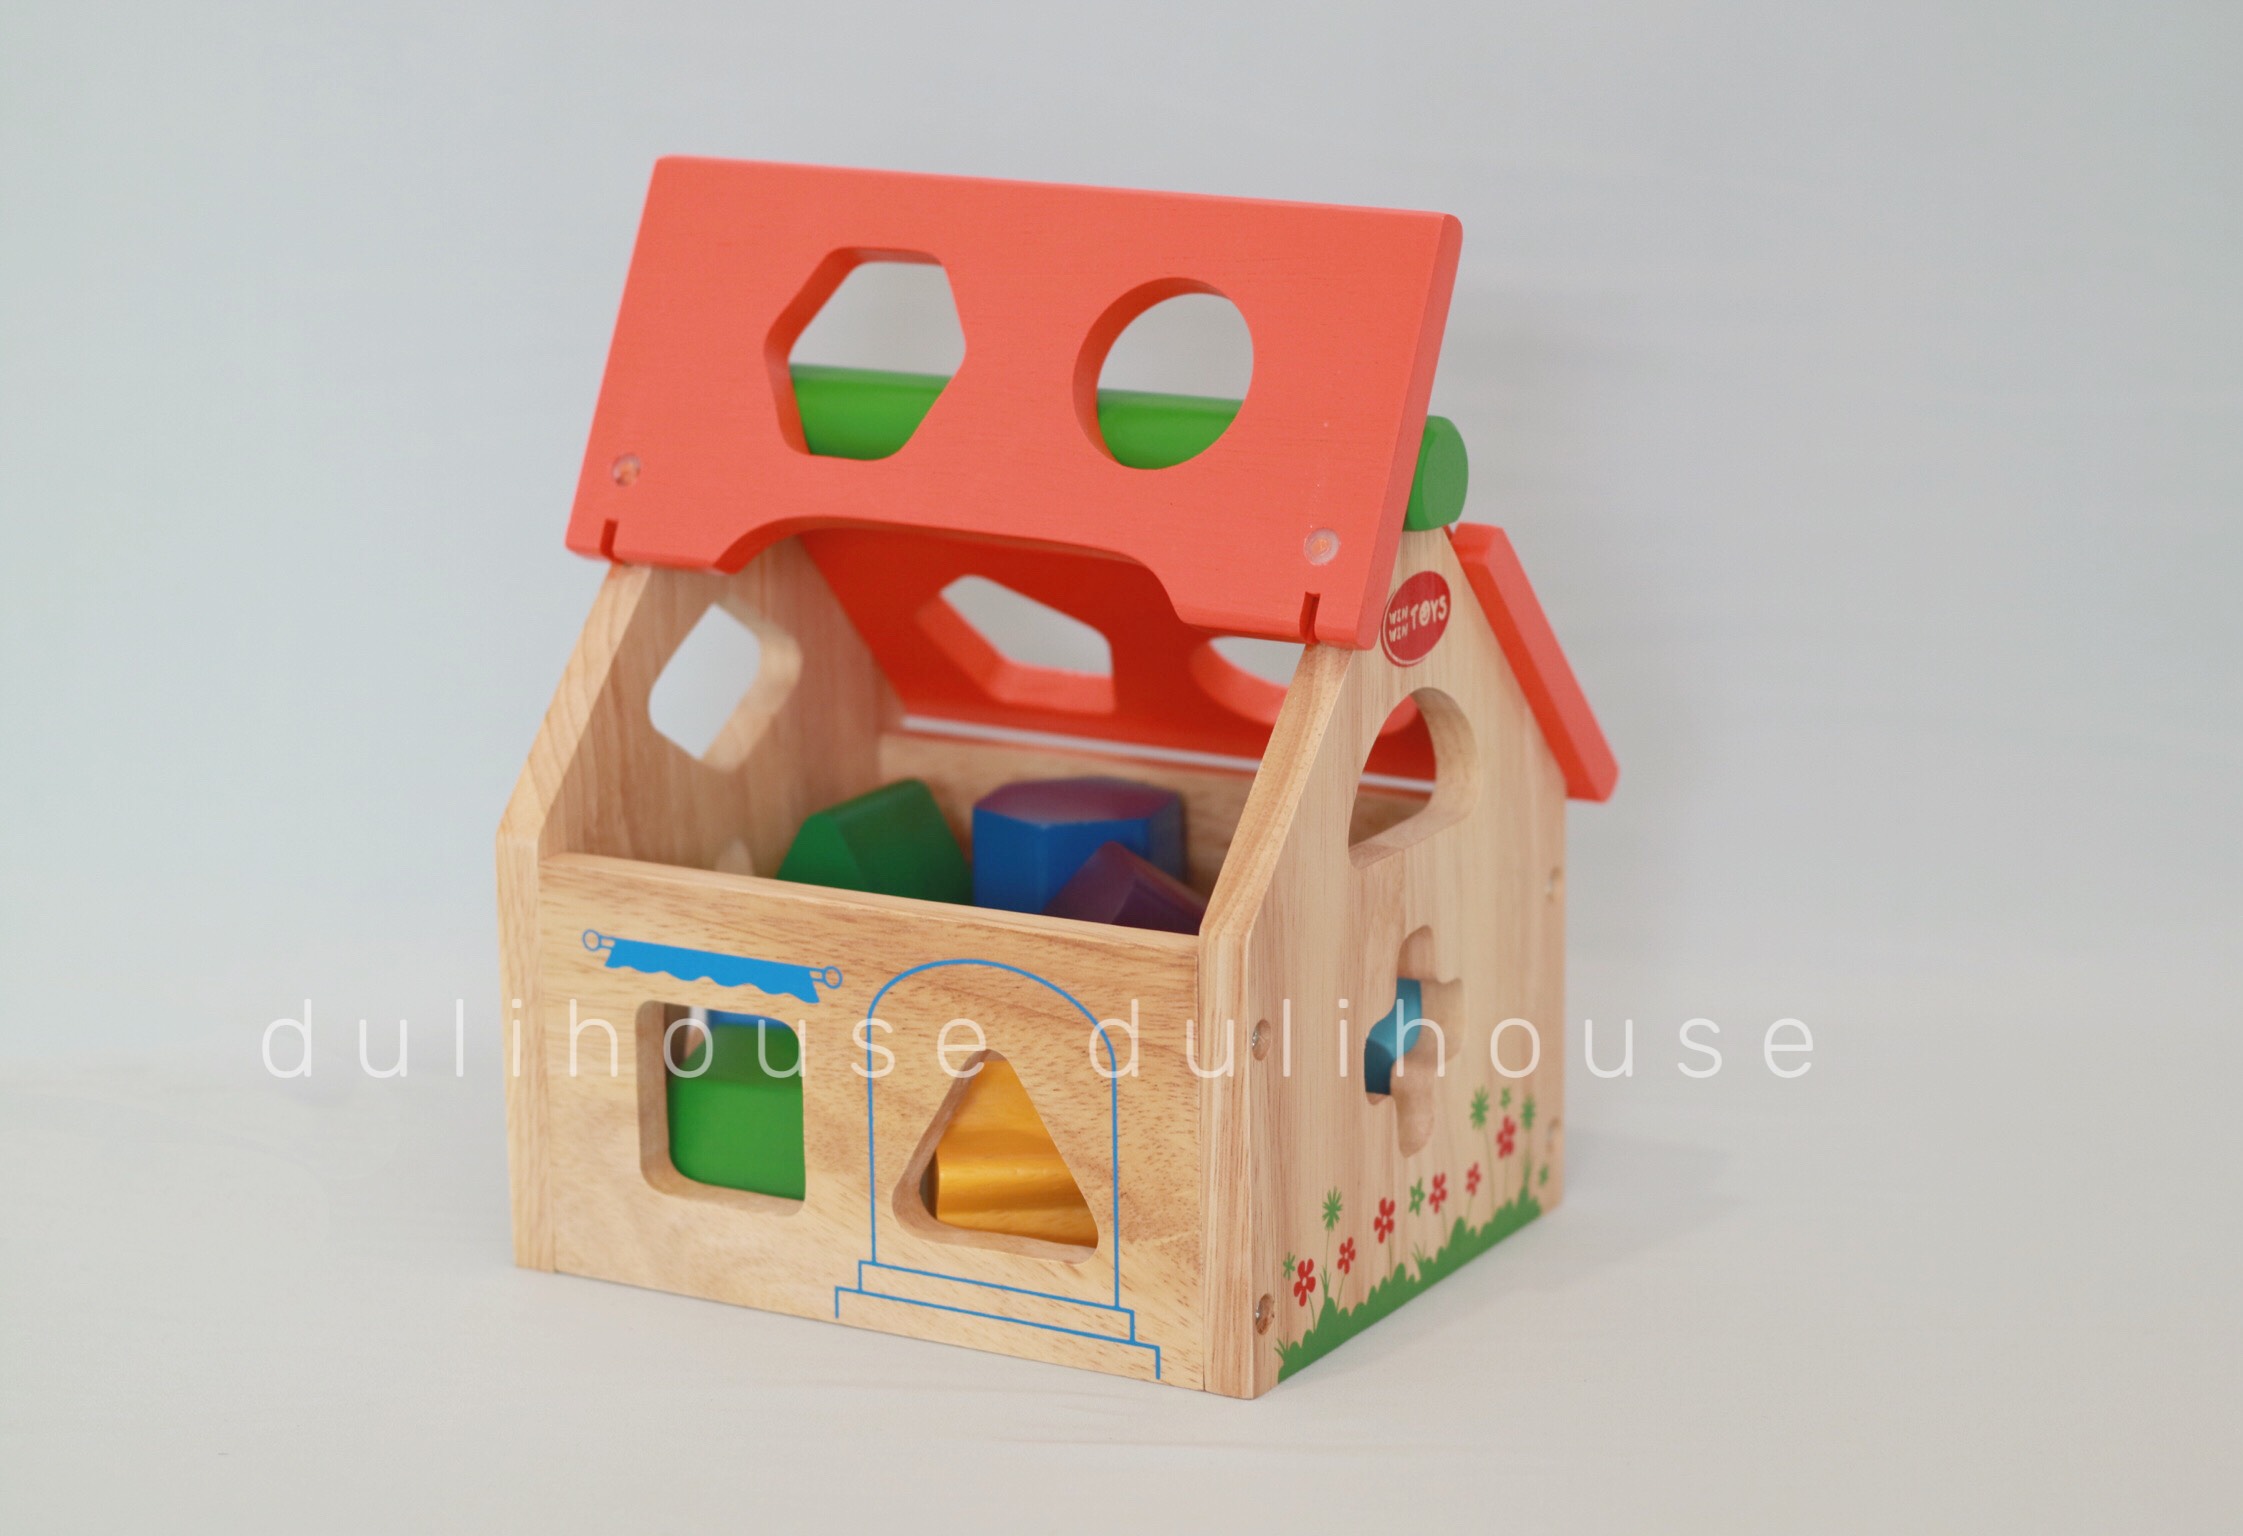 Đồ chơi gỗ cao cấp Ngôi nhà thả hình khối, giúp bé nhận biết cấu tạo ngôi nhà, phân biệt màu sắc &amp; hình khối, rèn luyện đôi bàn tay khéo léo linh hoạt - Sản xuất tại Việt Nam